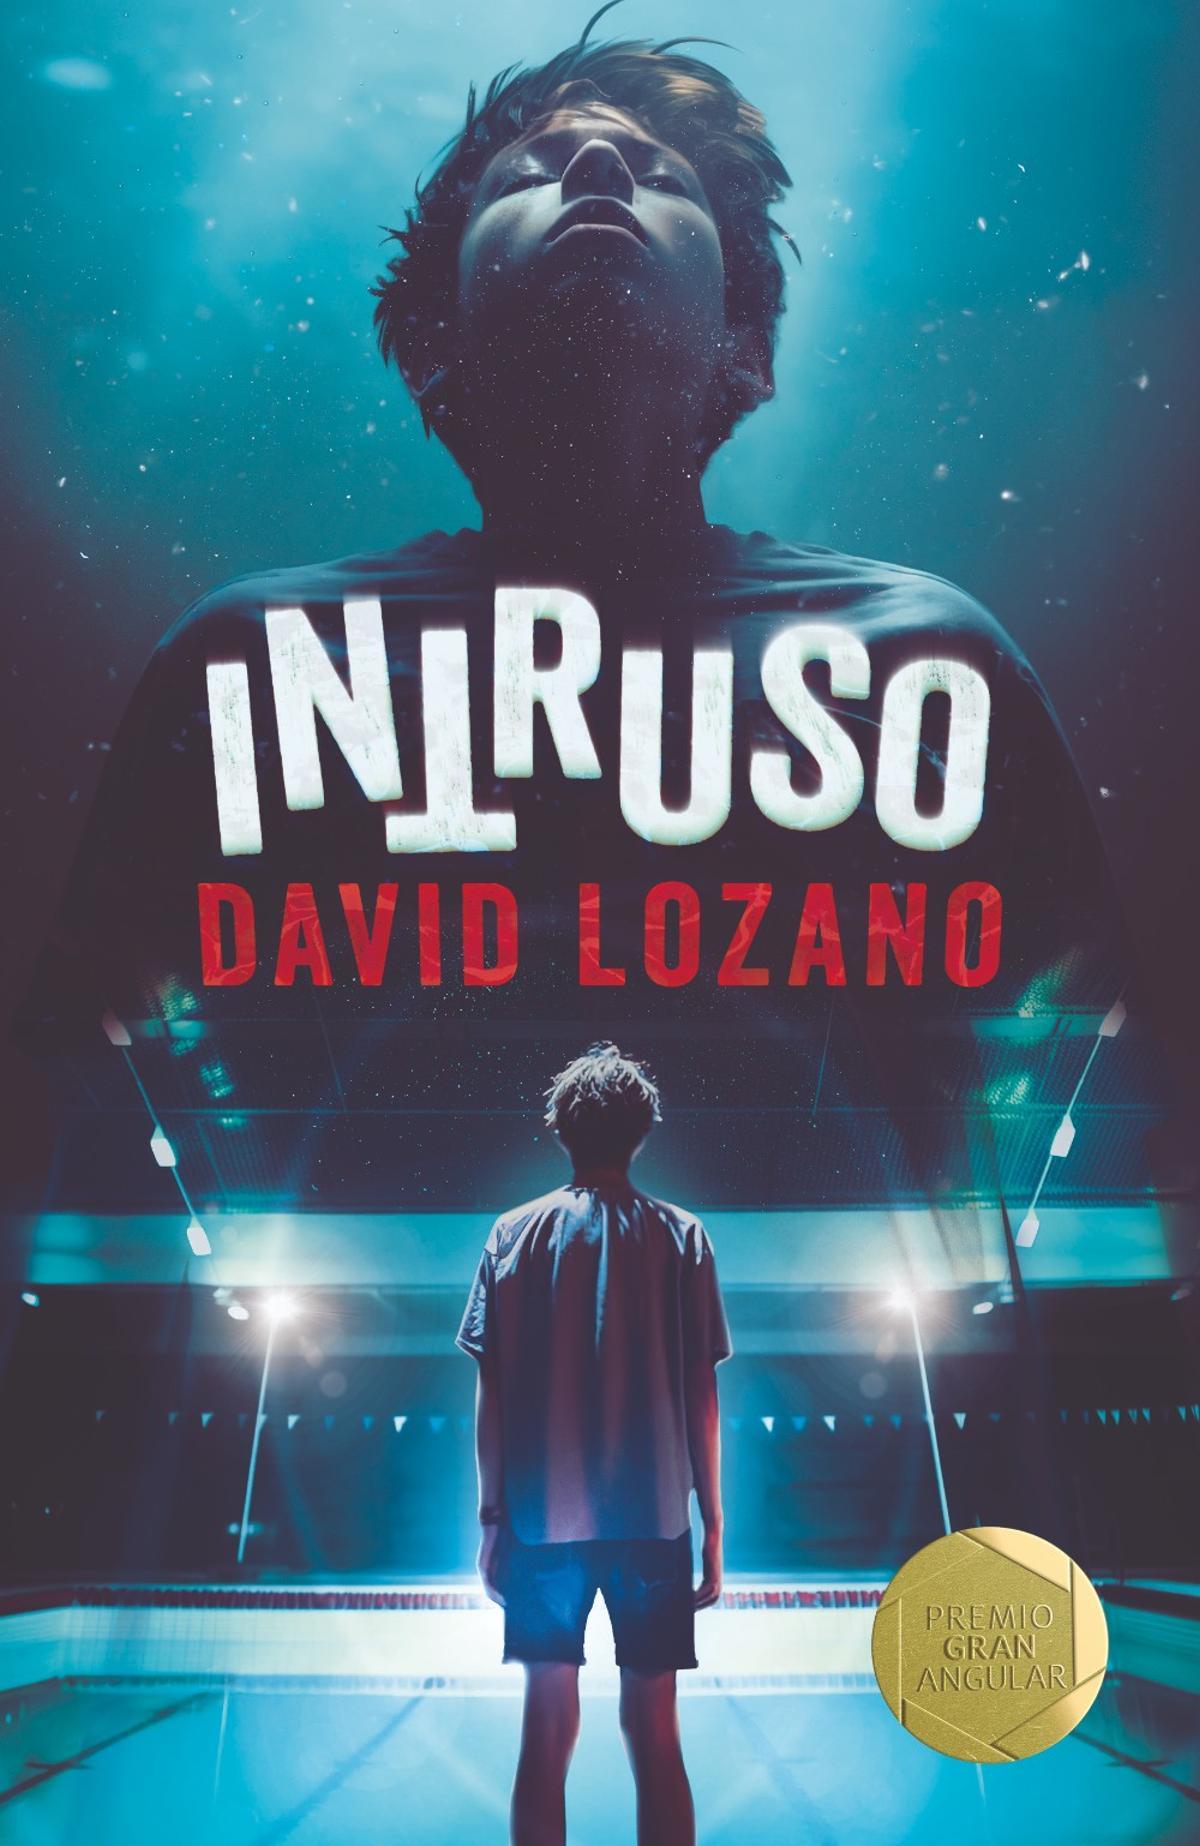 La portada de 'Intruso', de David Lozano.